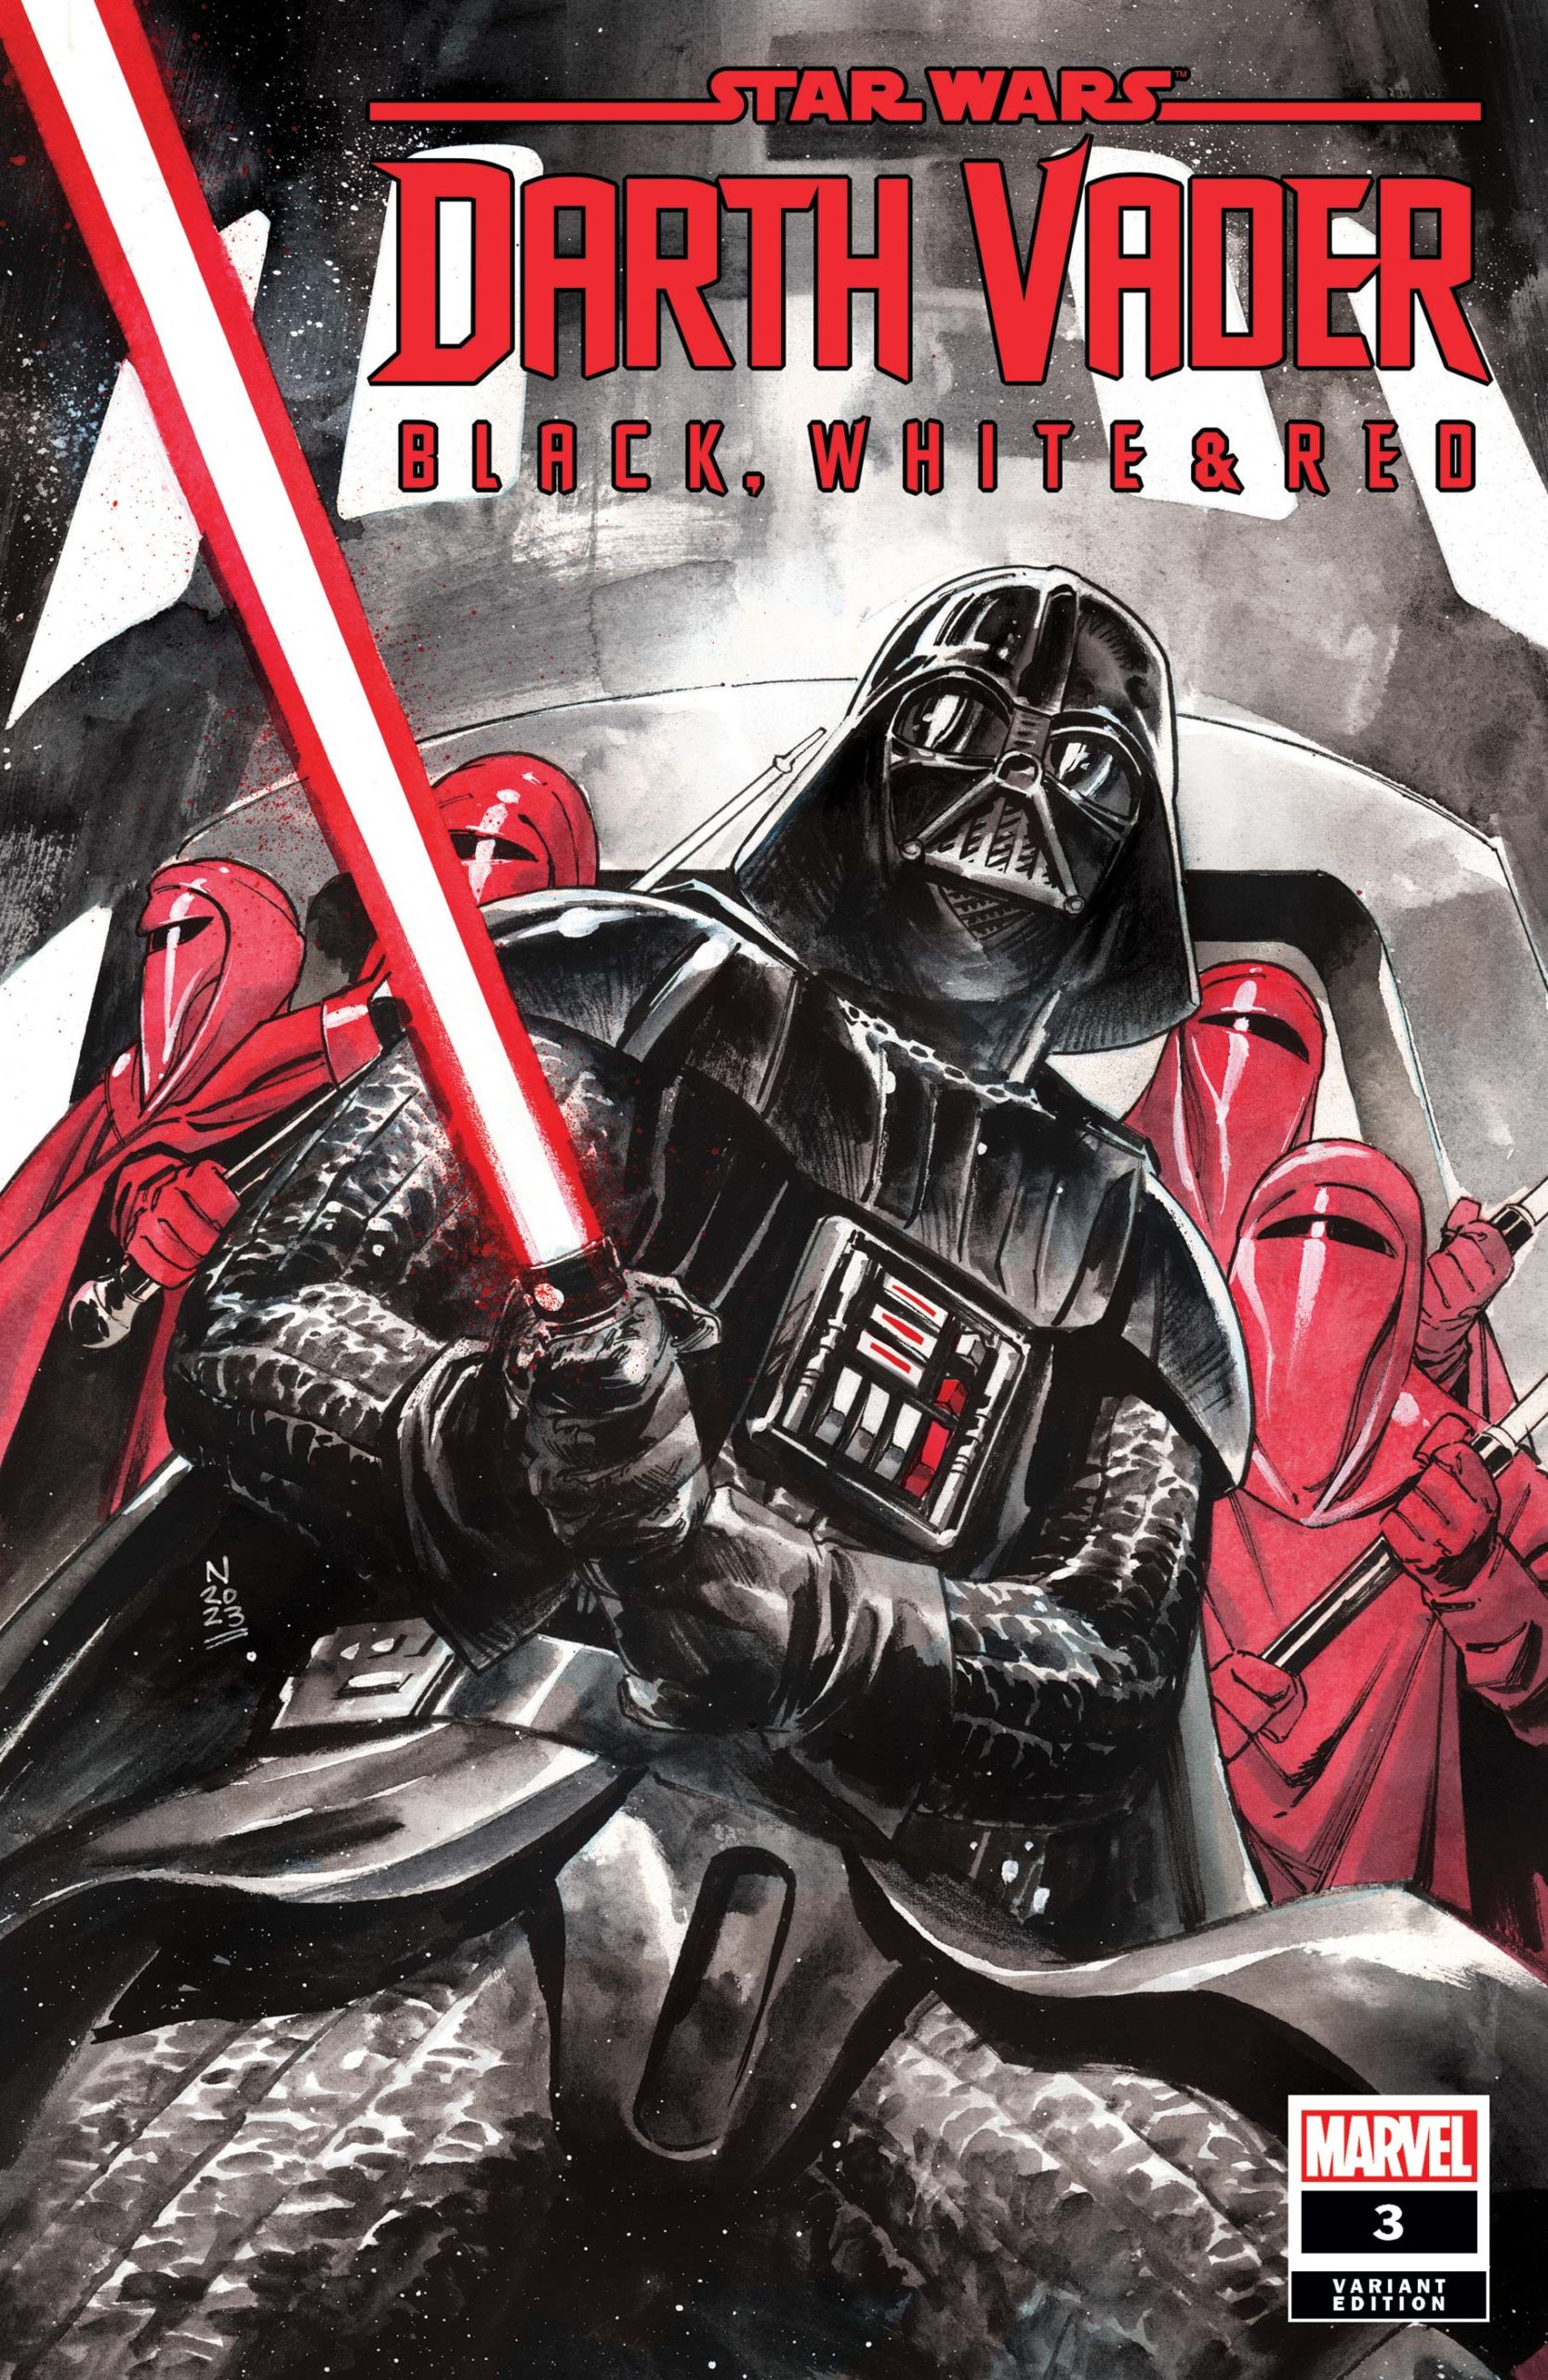 Darth Vader: Black, White & Red #3 (Nic Klein Variant Cover)